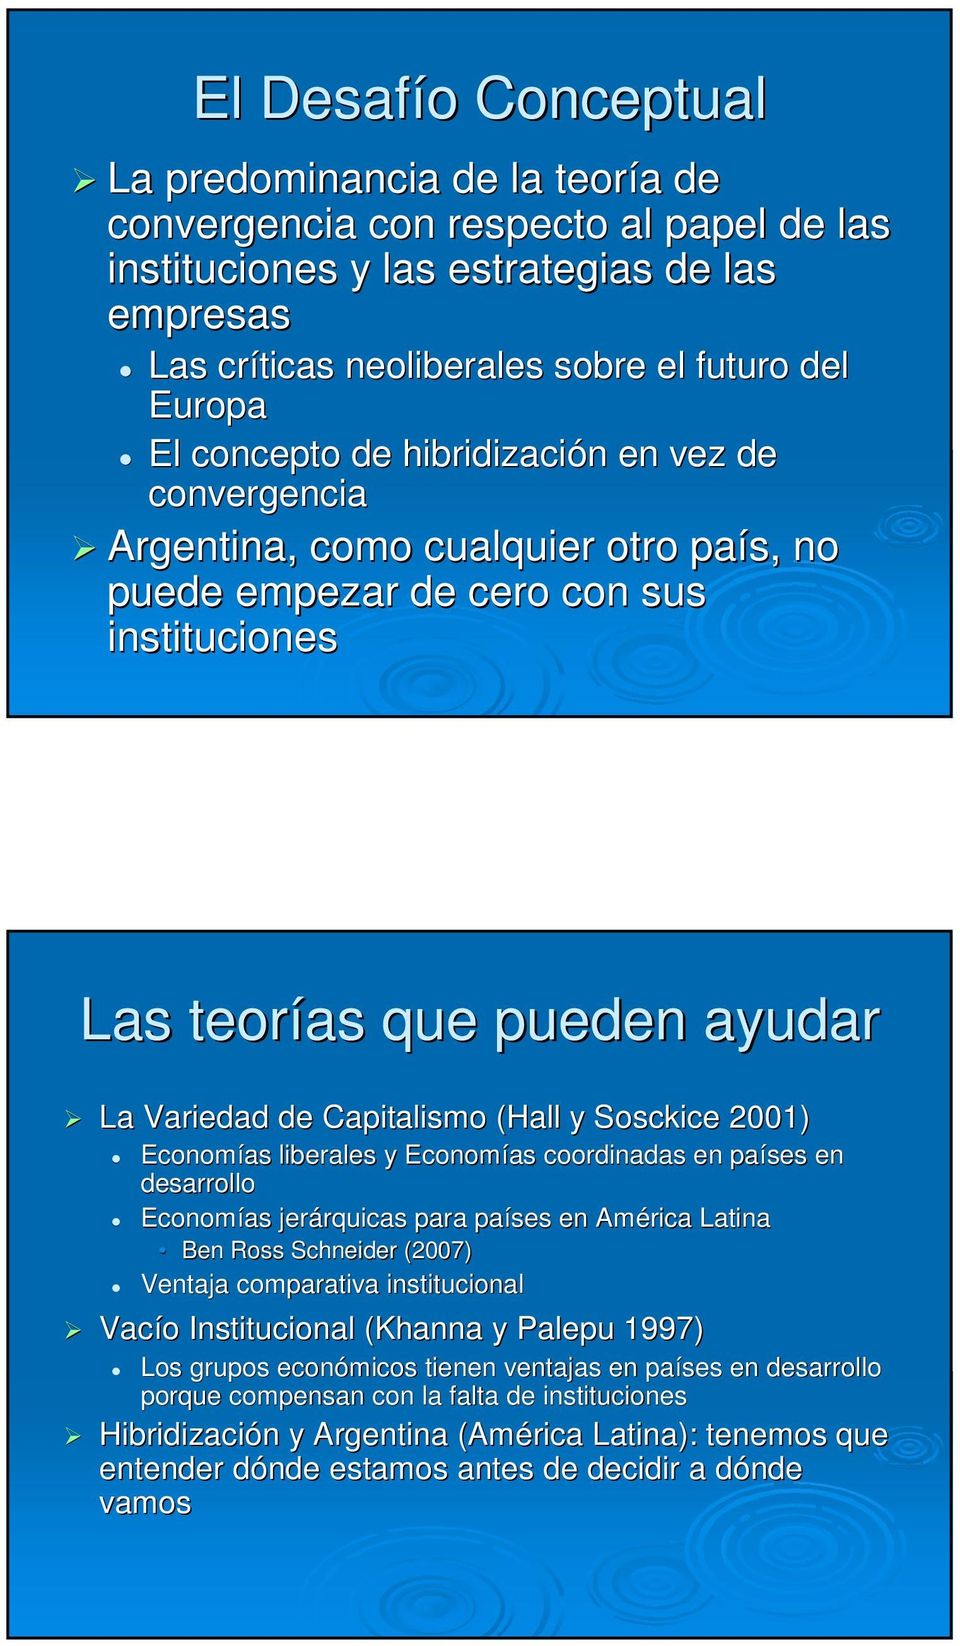 Capitalismo (Hall y Sosckice 2001) Economías liberales y Economías coordinadas en países en desarrollo Economías jerárquicas rquicas para países en América Latina Ben Ross Schneider (2007) Ventaja